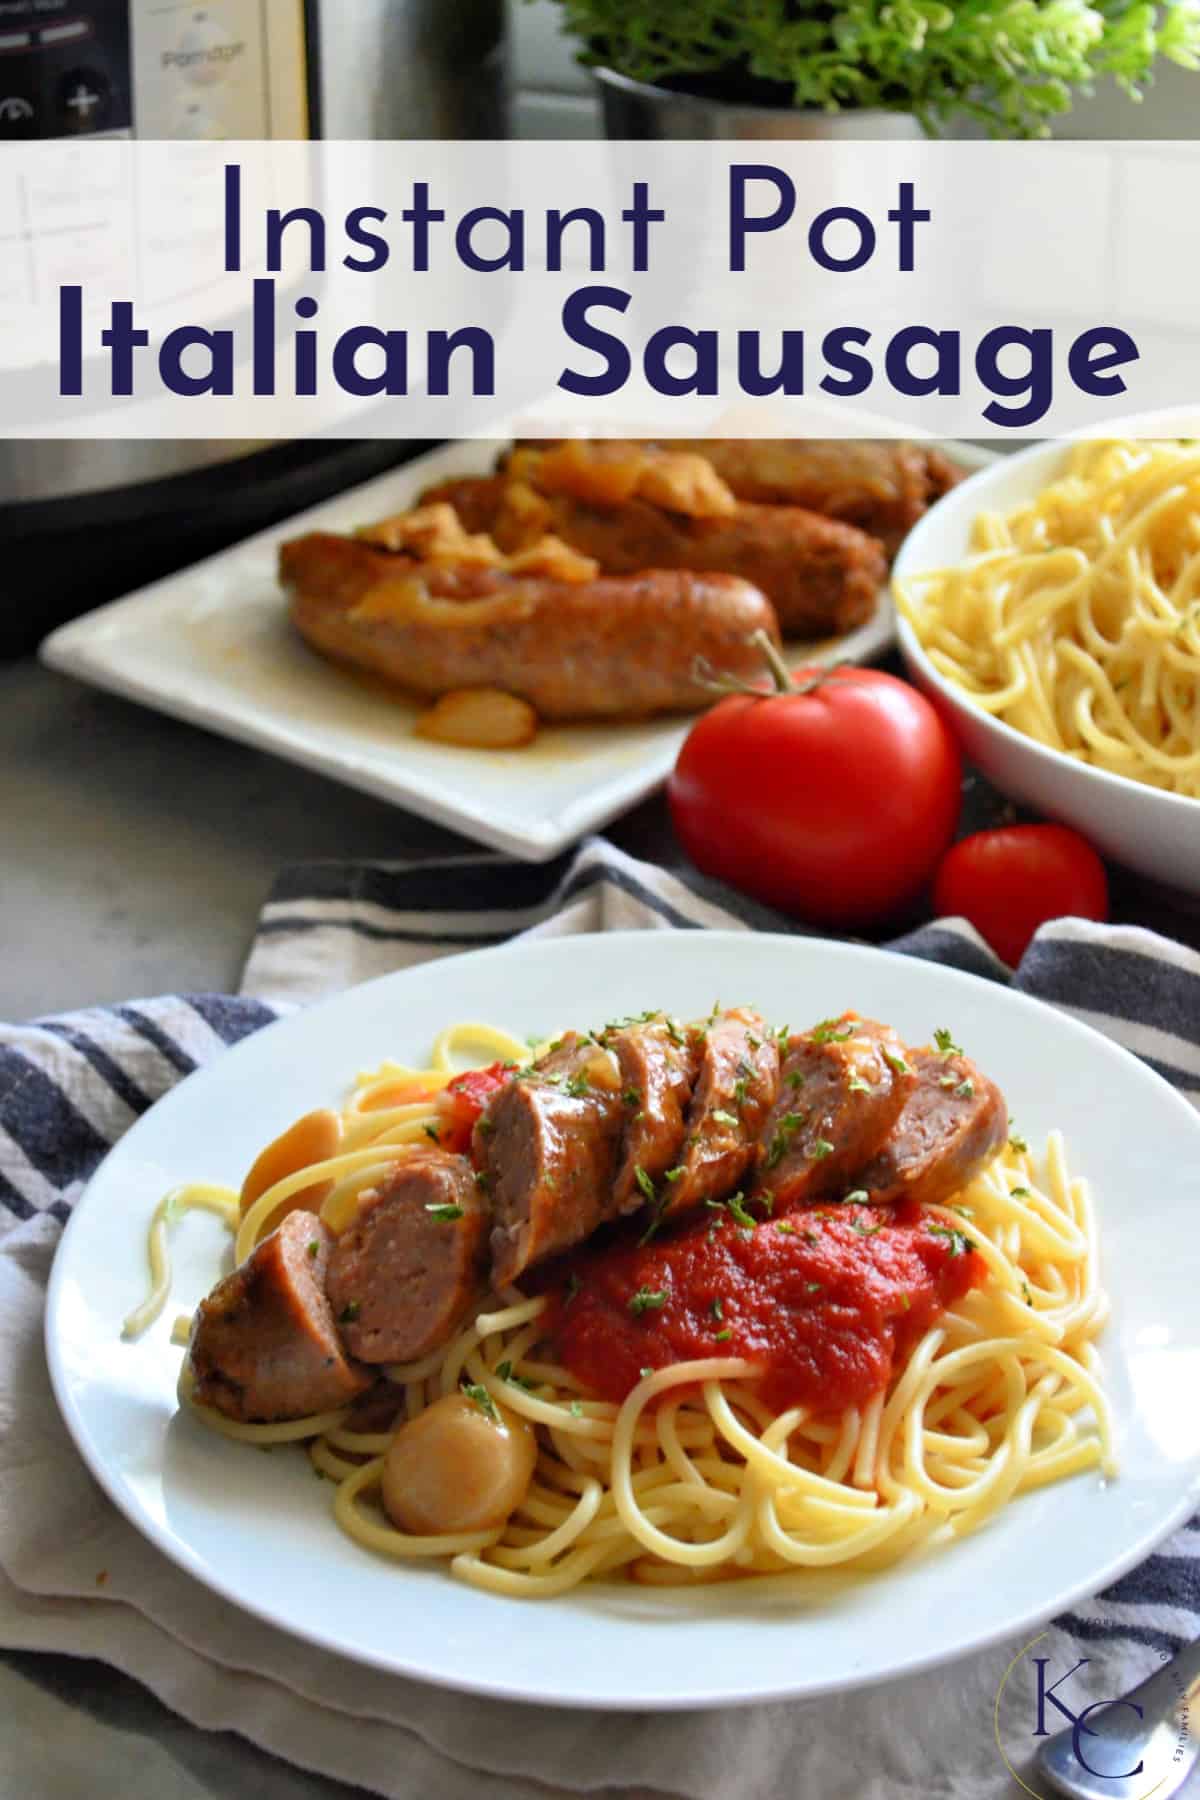  platerowane spaghetti z marinarą, ziołami i pokrojoną włoską kiełbasą z tekstem tytułowym.